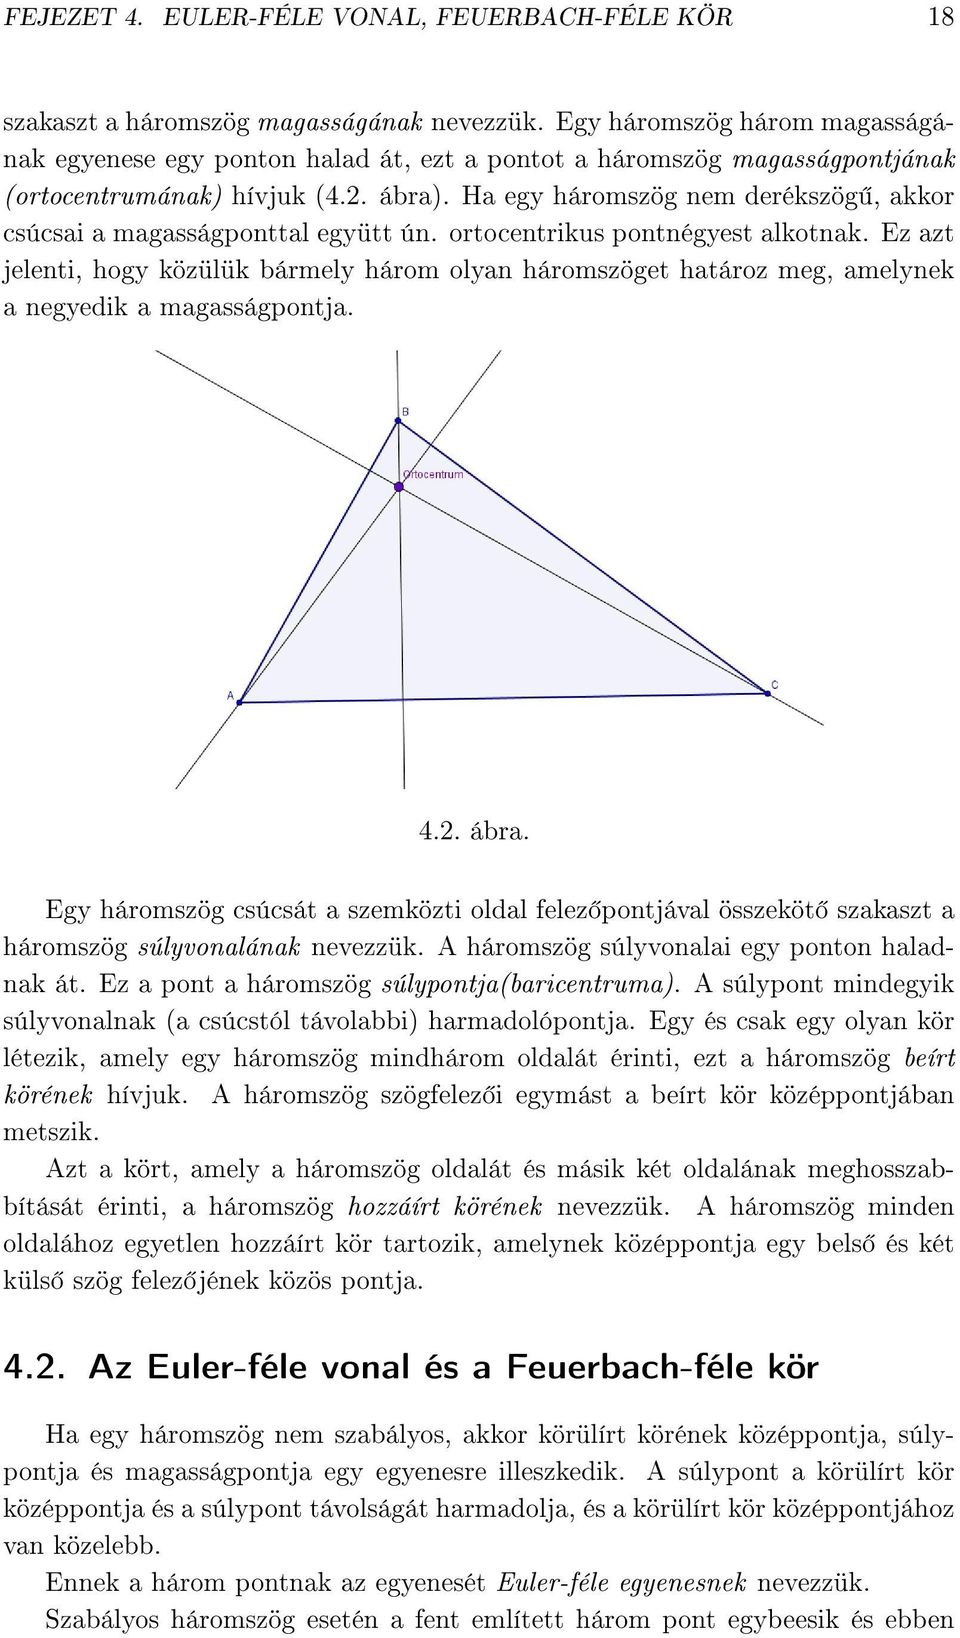 Ha egy háromszög nem derékszög, akkor csúcsai a magasságponttal együtt ún. ortocentrikus pontnégyest alkotnak.